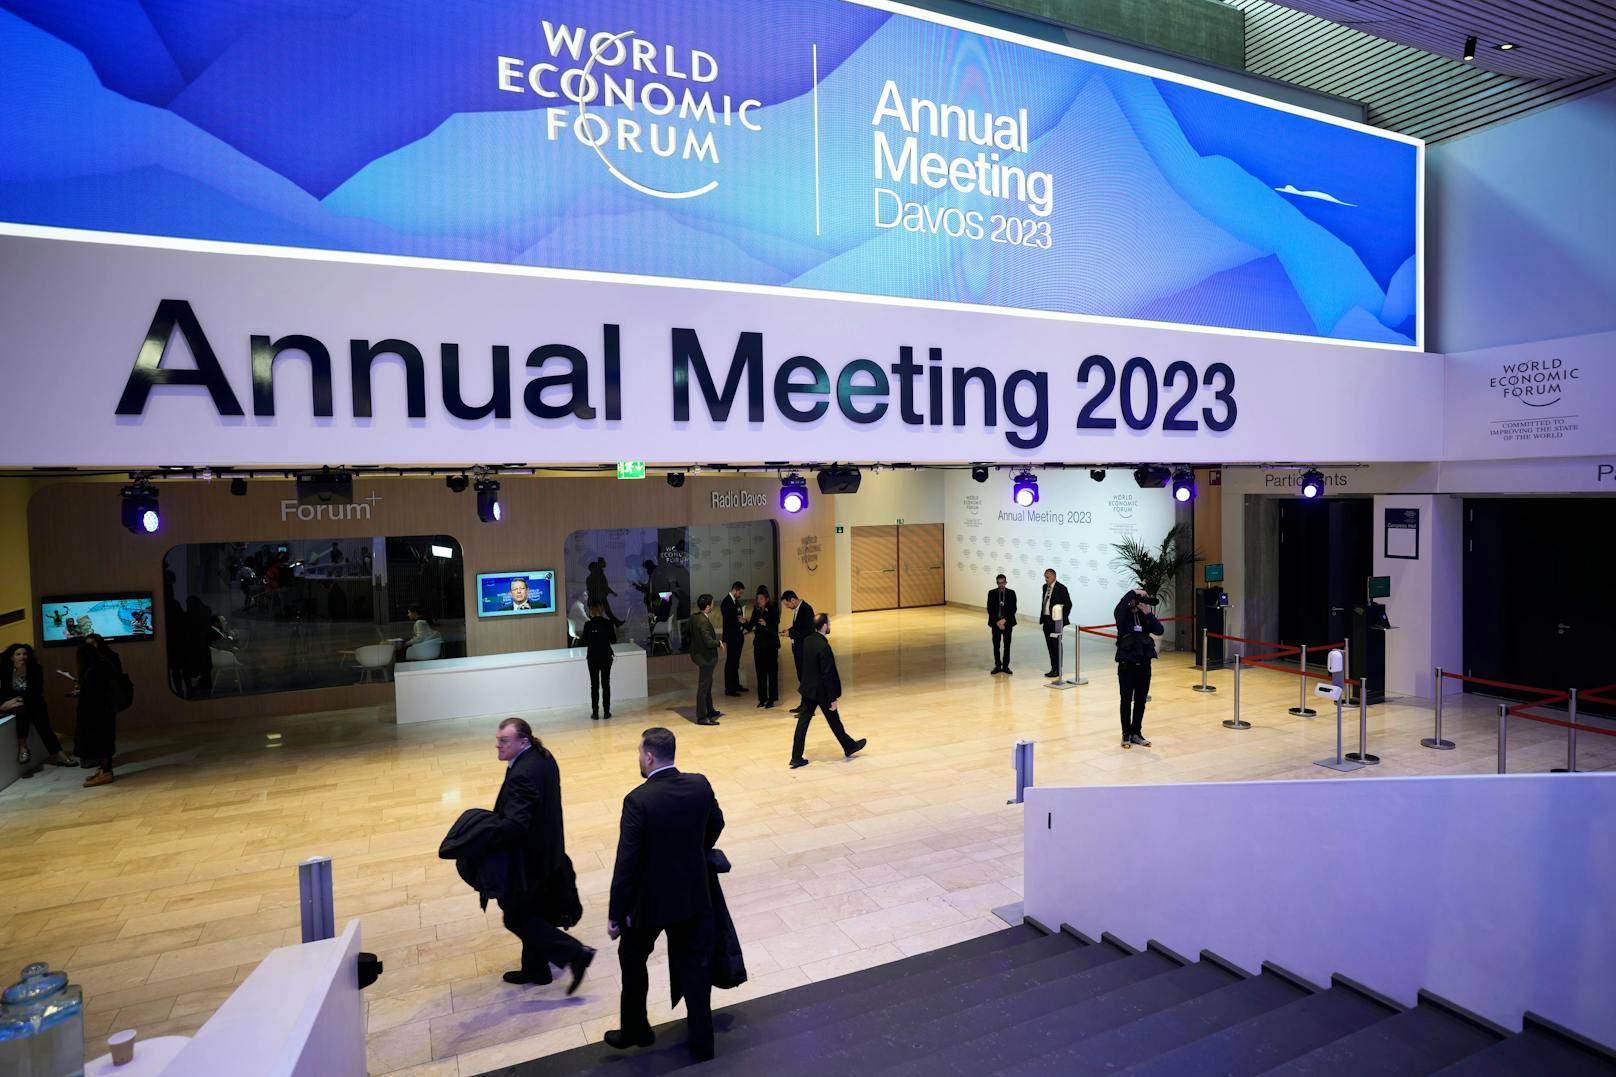 Beim Weltwirtschaftsforum WEF in Davos (CH) treffen sich jedes Jahr die Reichen und Mächtigen.